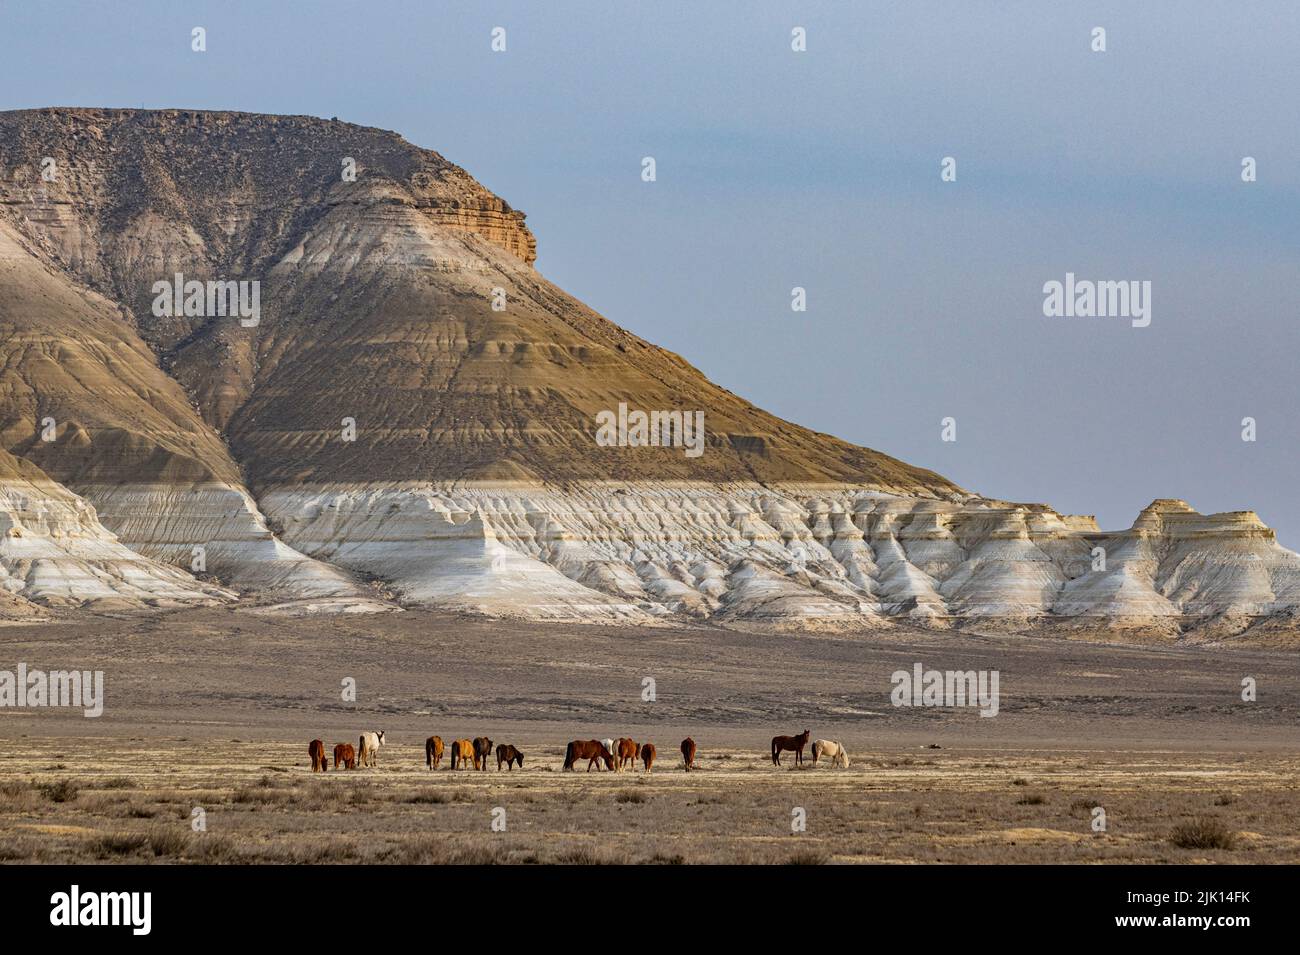 Caballos salvajes que pastan delante de Sor Tuzbair, un solonchak (pantano salado), Mangystau, Kazajstán, Asia Central, Asia Foto de stock